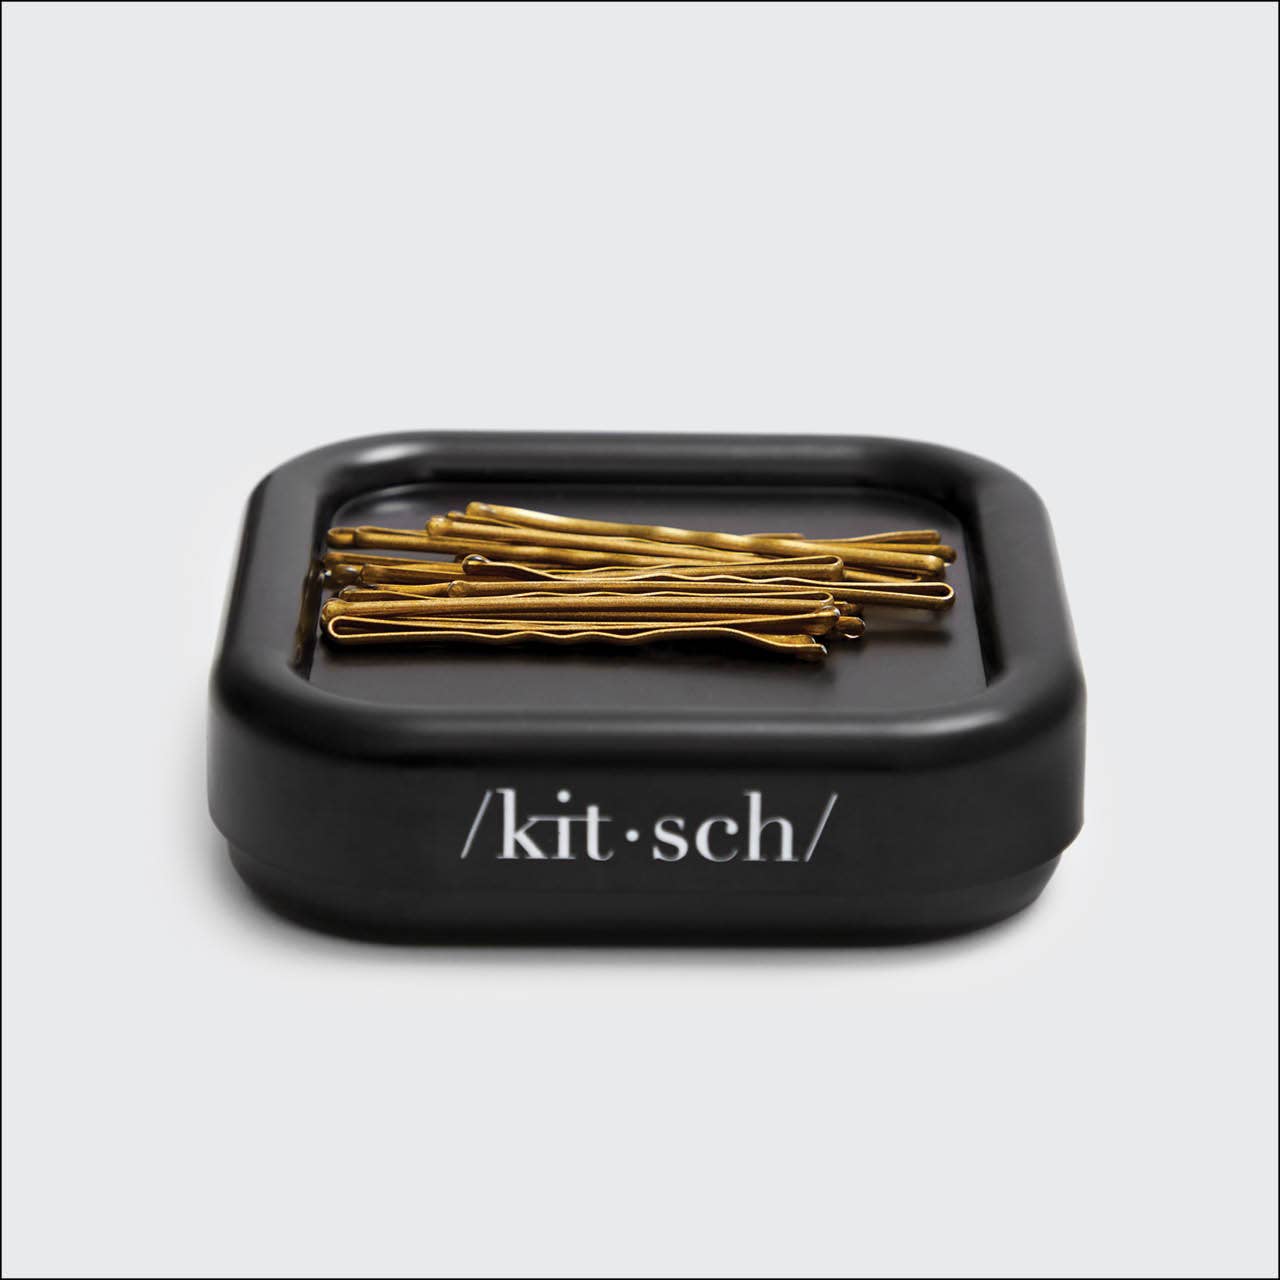 Magnetic Bobby Pin Holder | Kitsch